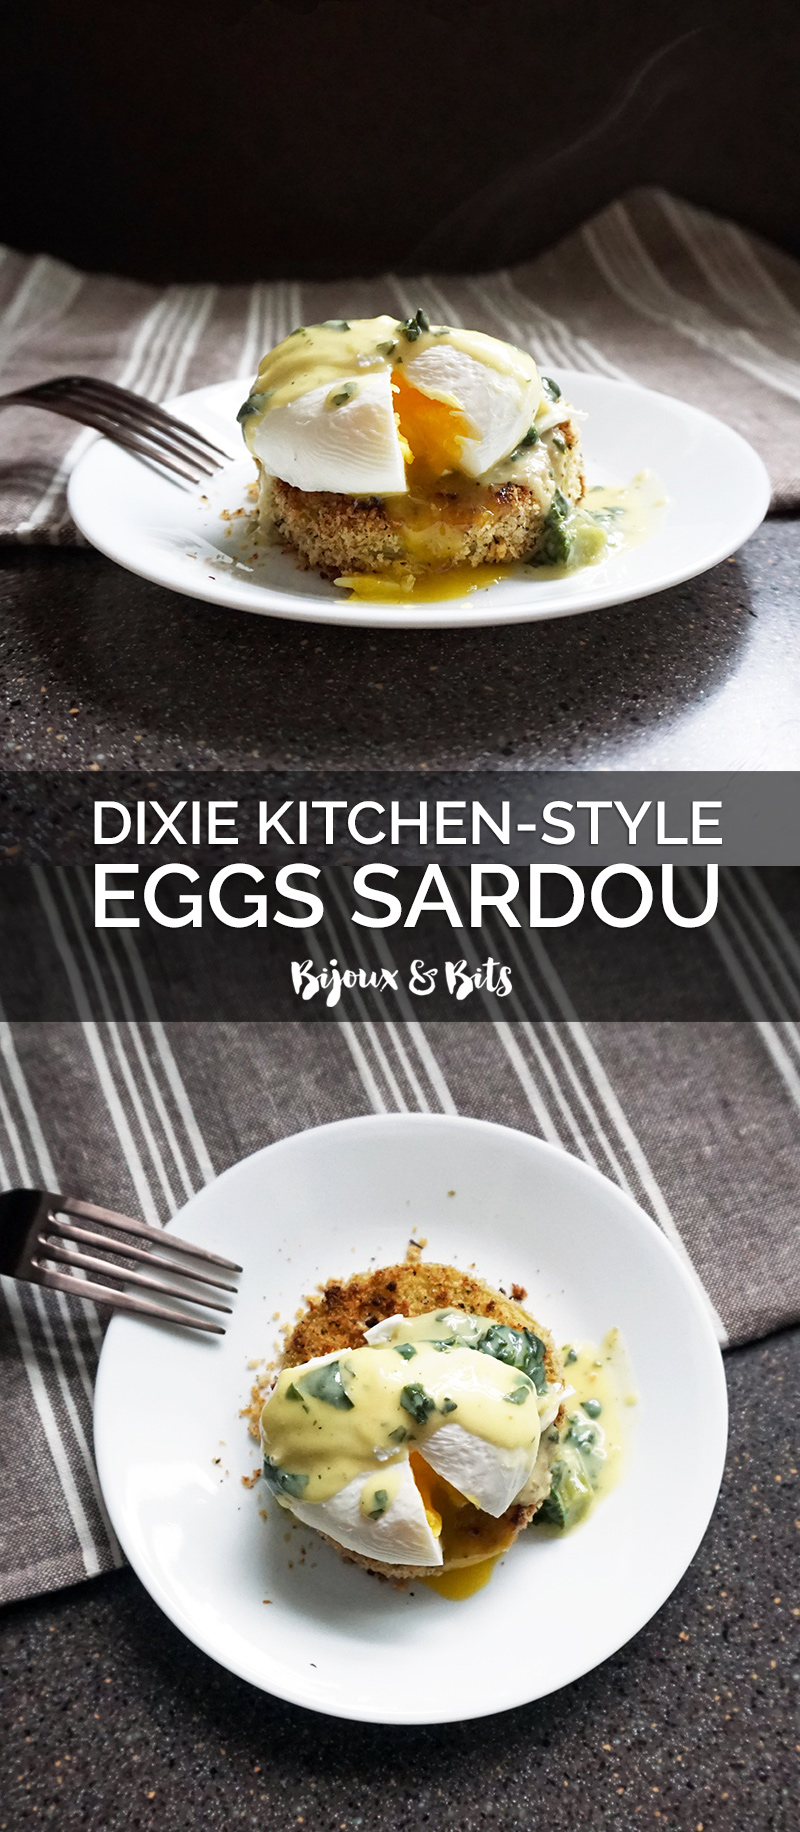 Dixie Kitchen-style Eggs Sardou recipe from @bijouxandbits